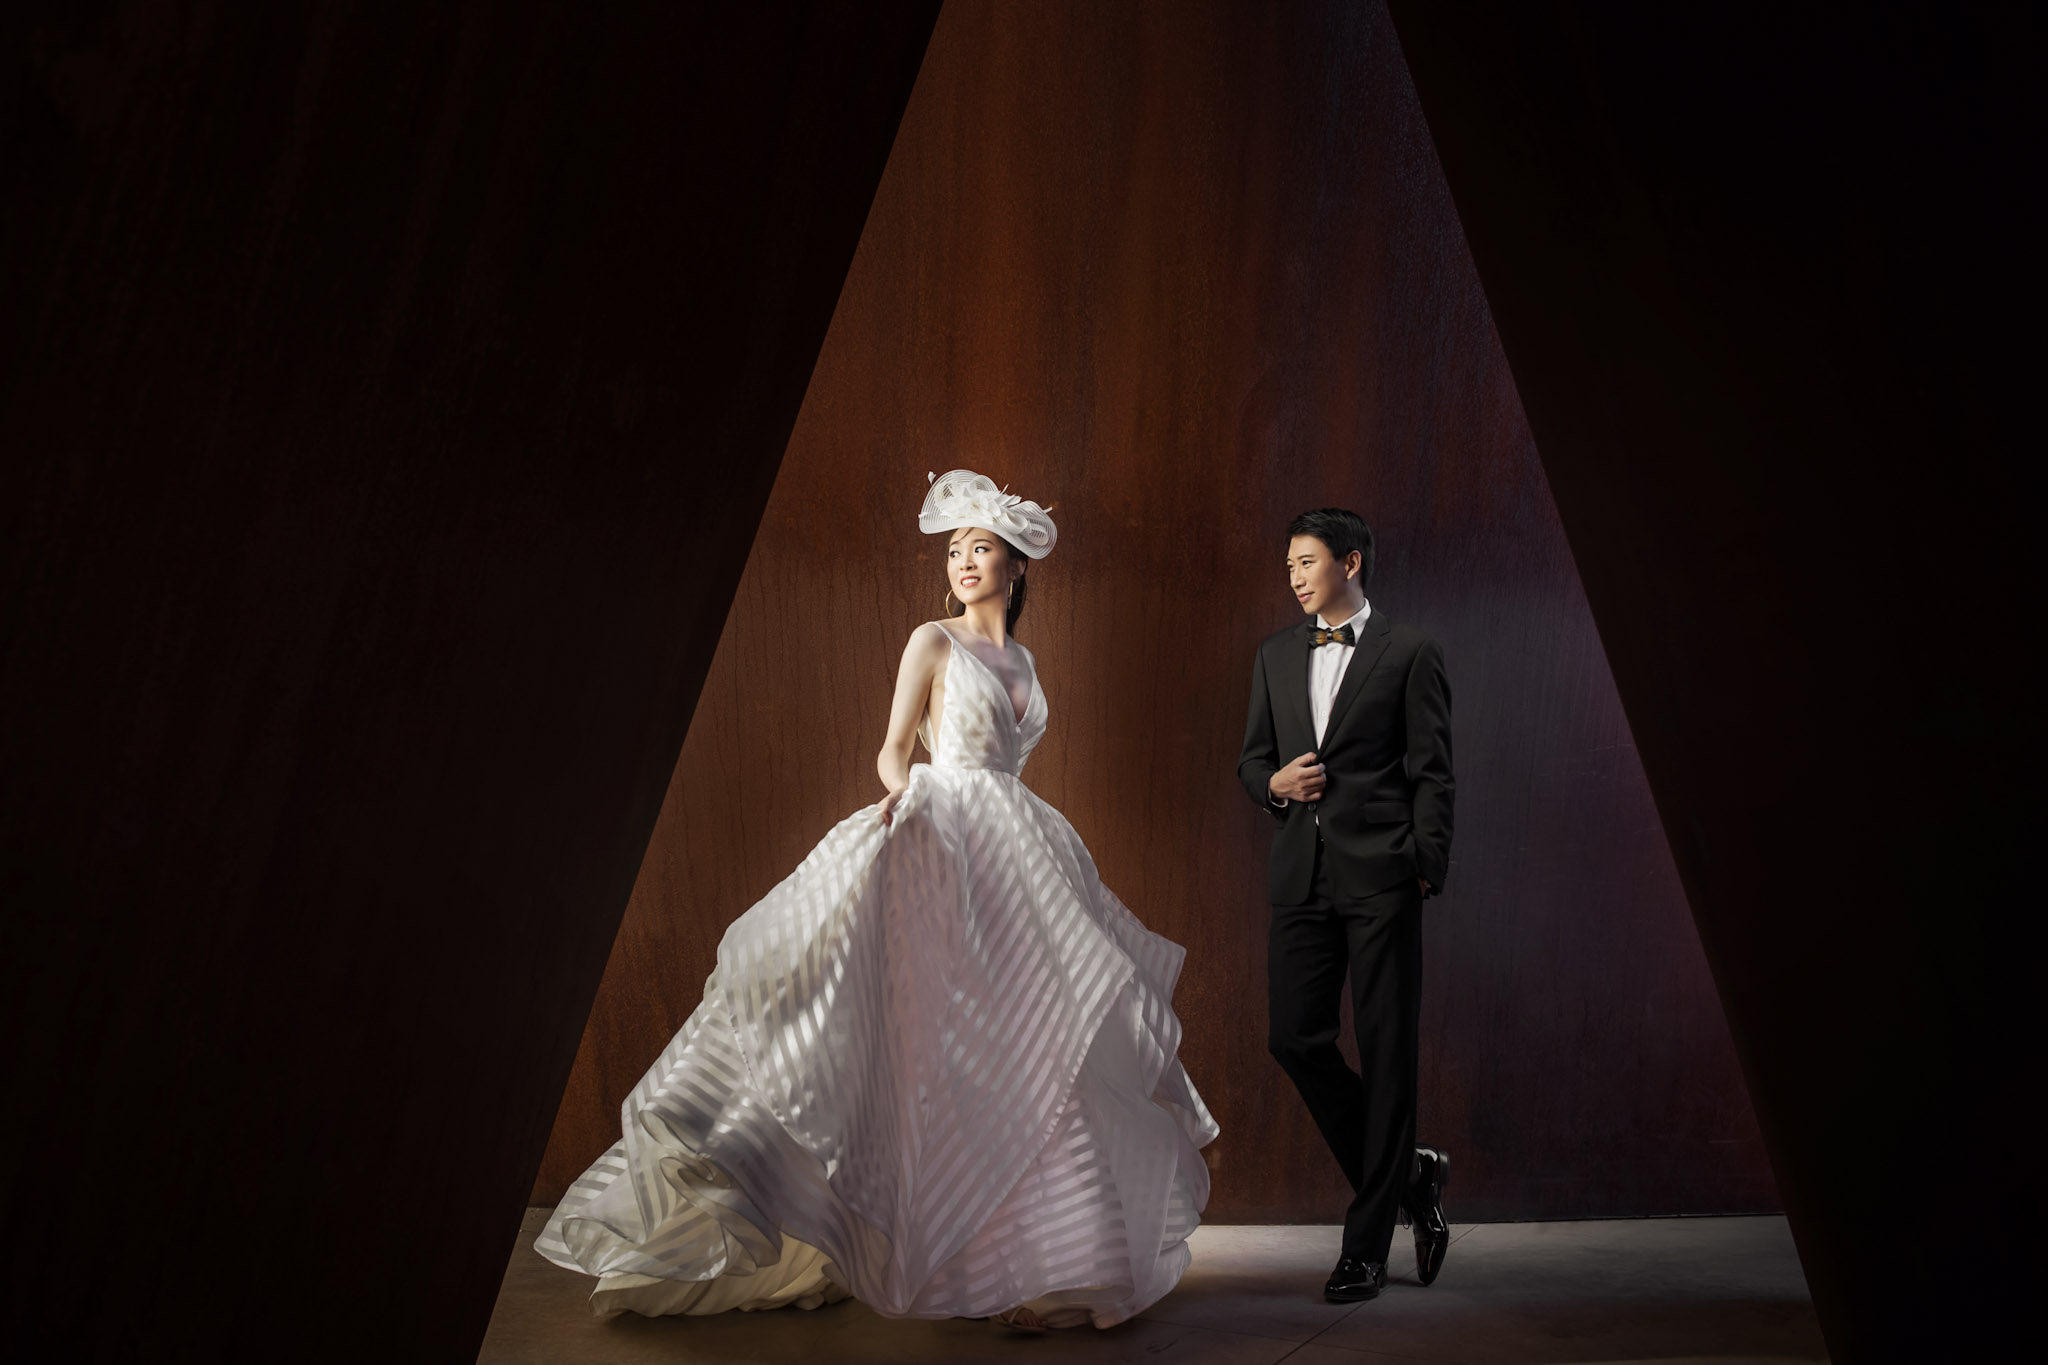 a bride and a groom in wedding attire posing